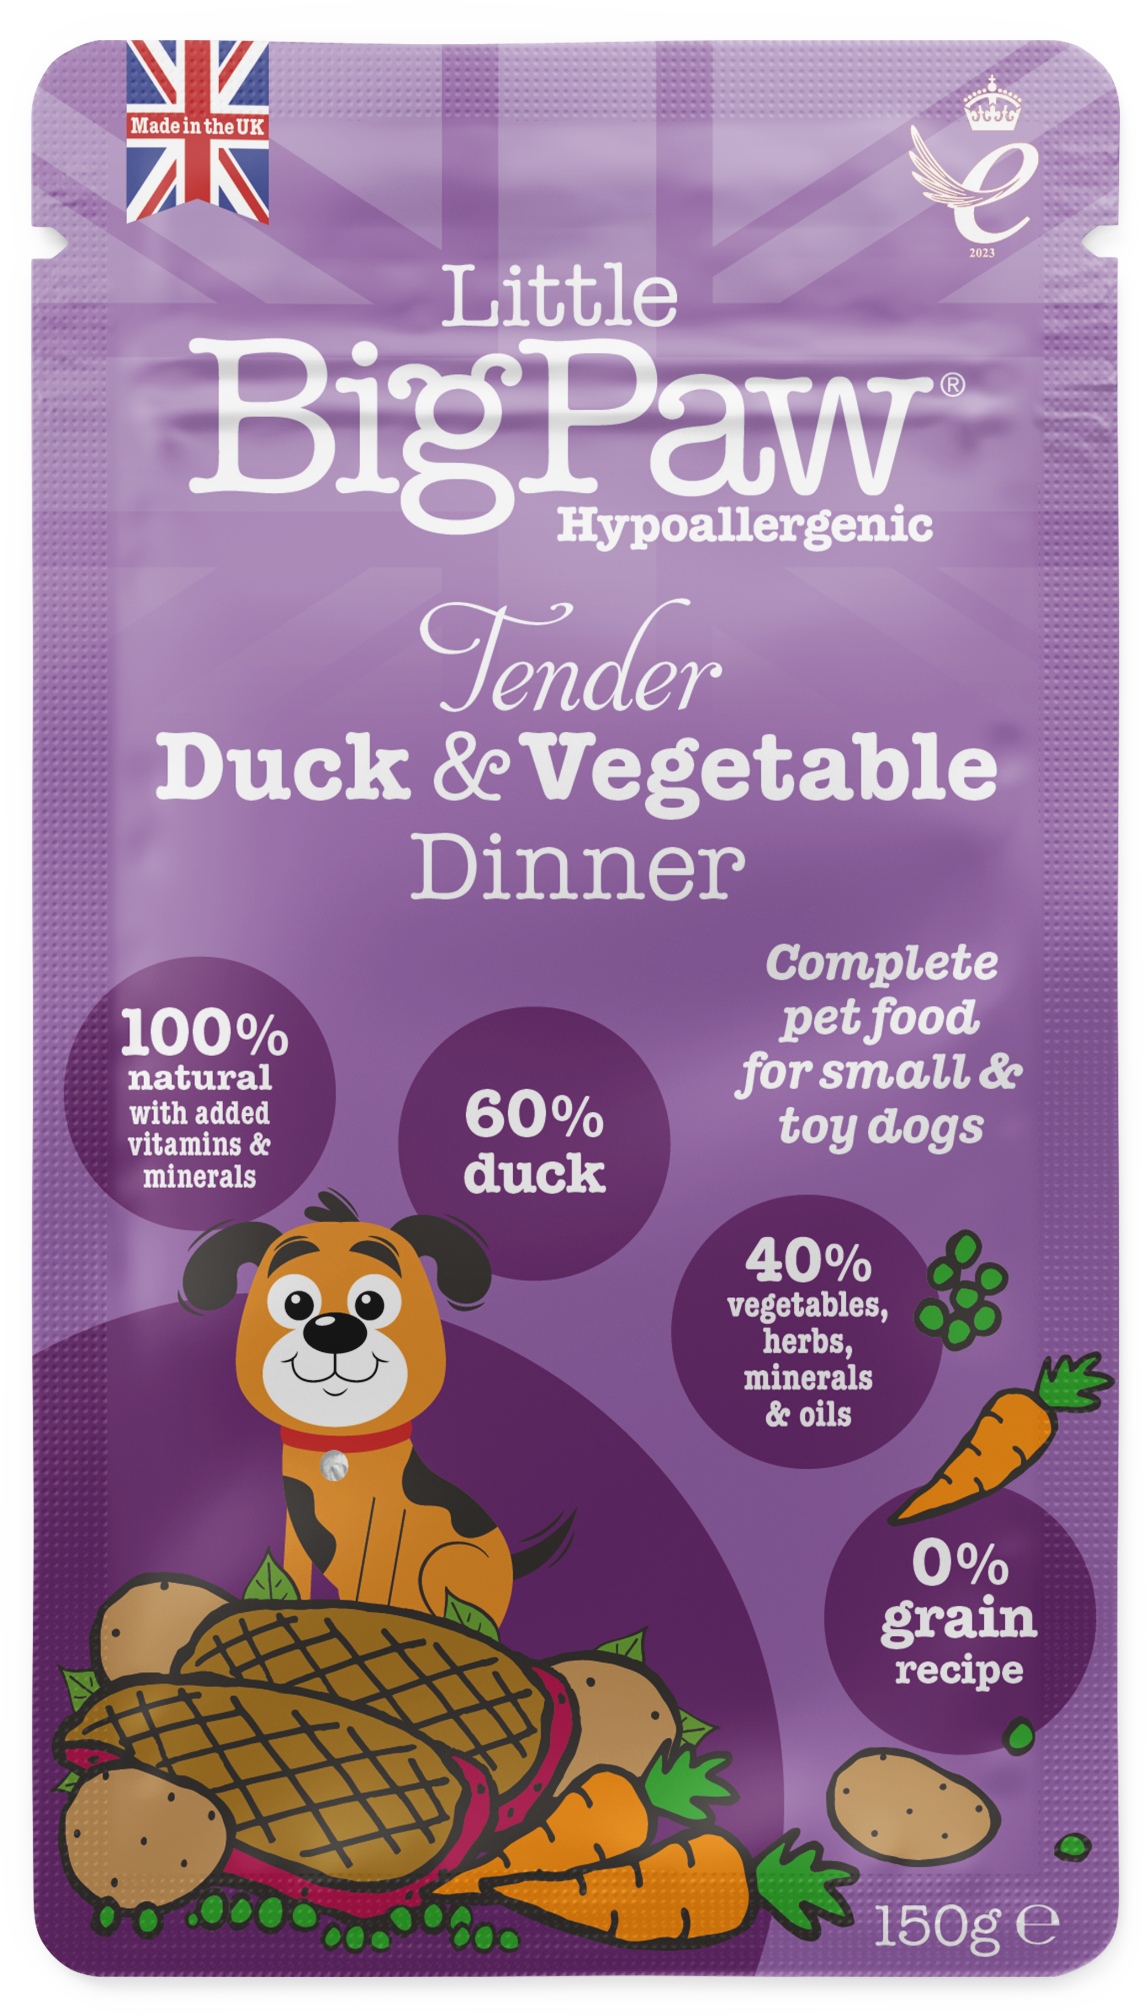 Tender Duck & Vegetable Dinner